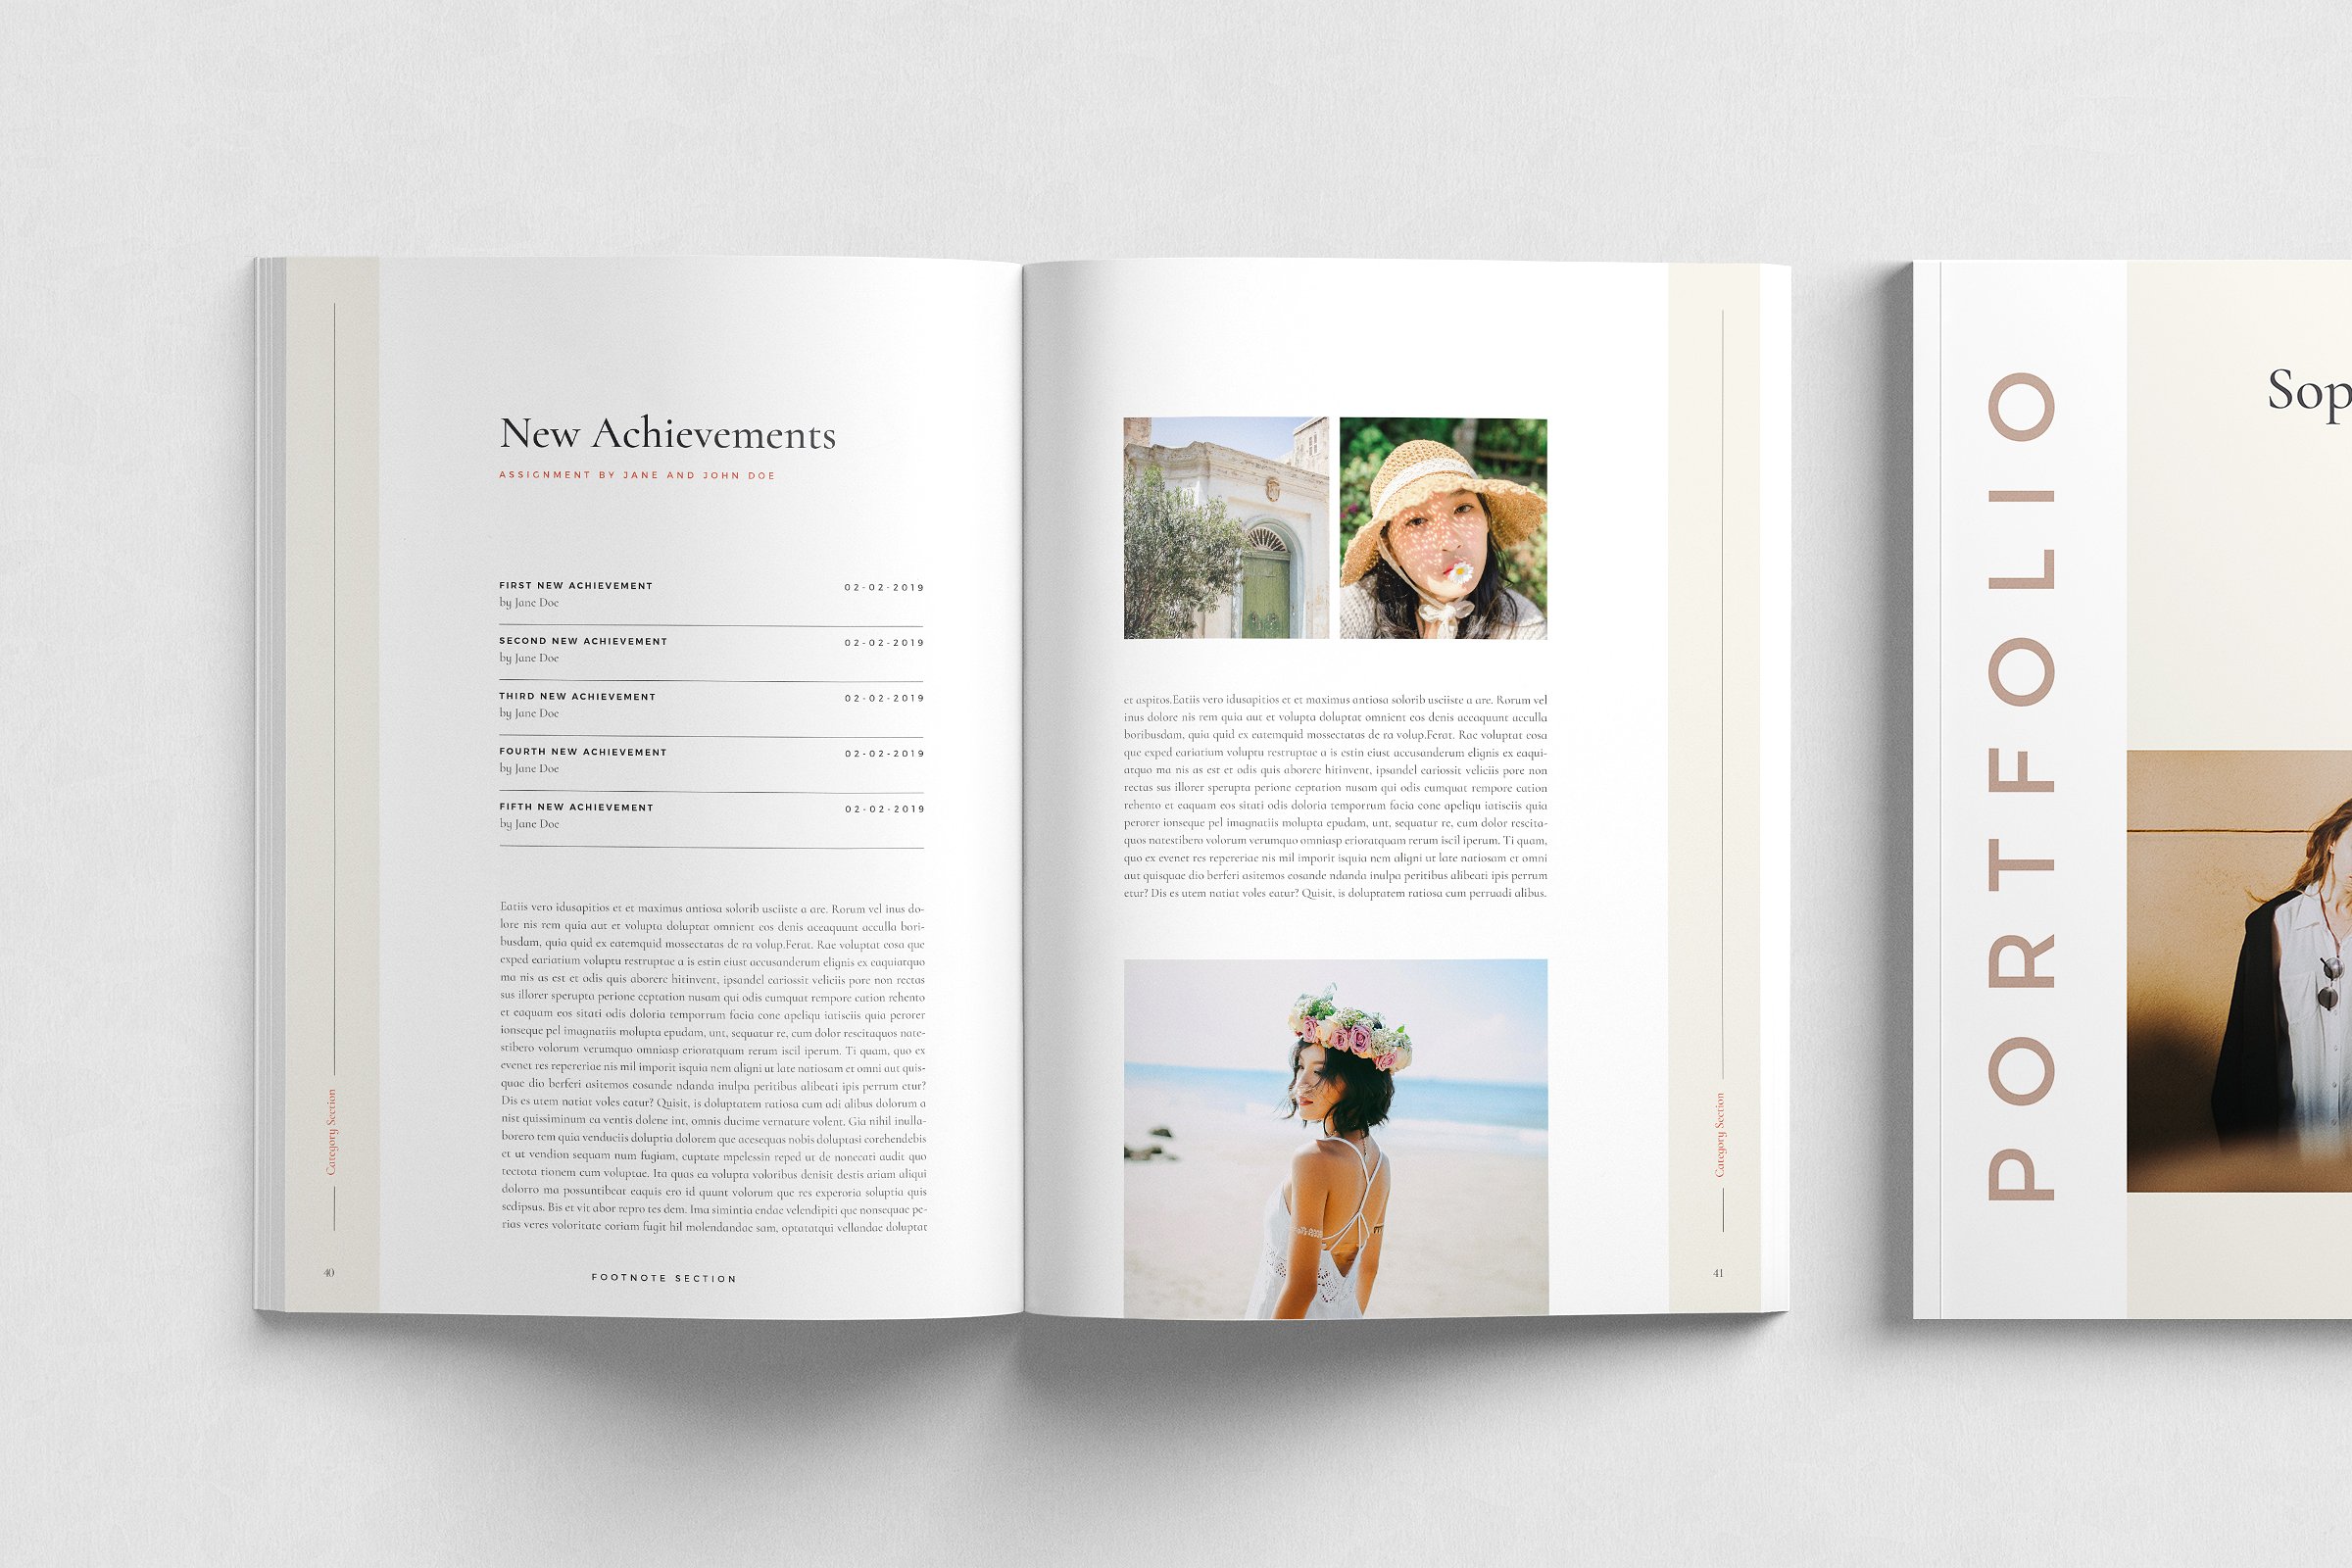 现代简约的服装品牌摄影宣传册模板 Modern Minimalist Clothing Brand Photography Brochure Template插图7